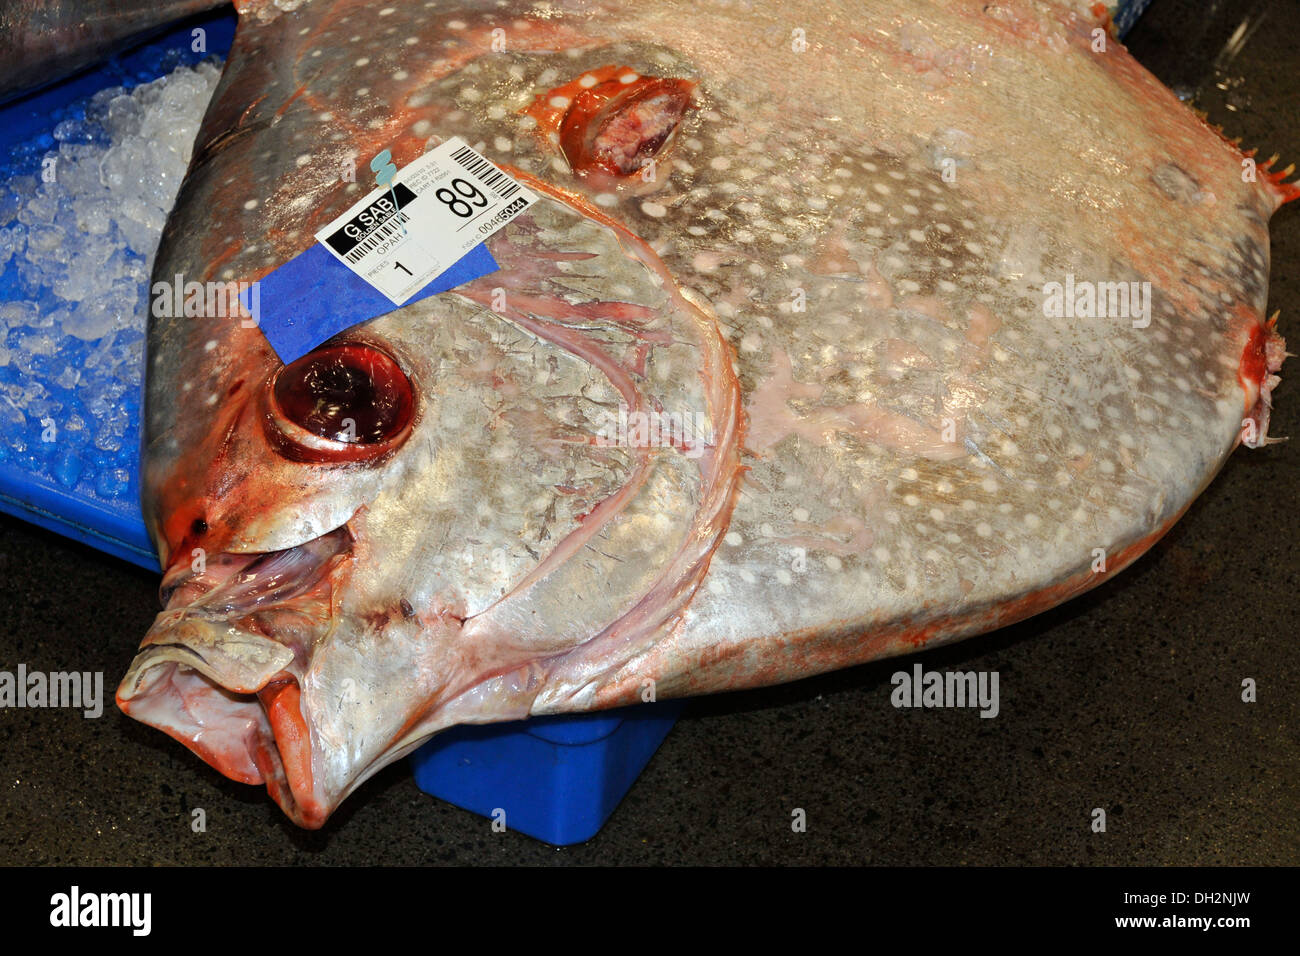 Dead Moonfish at Fish Market, Lampris regius, Oahu, Hawaii, USA Stock Photo